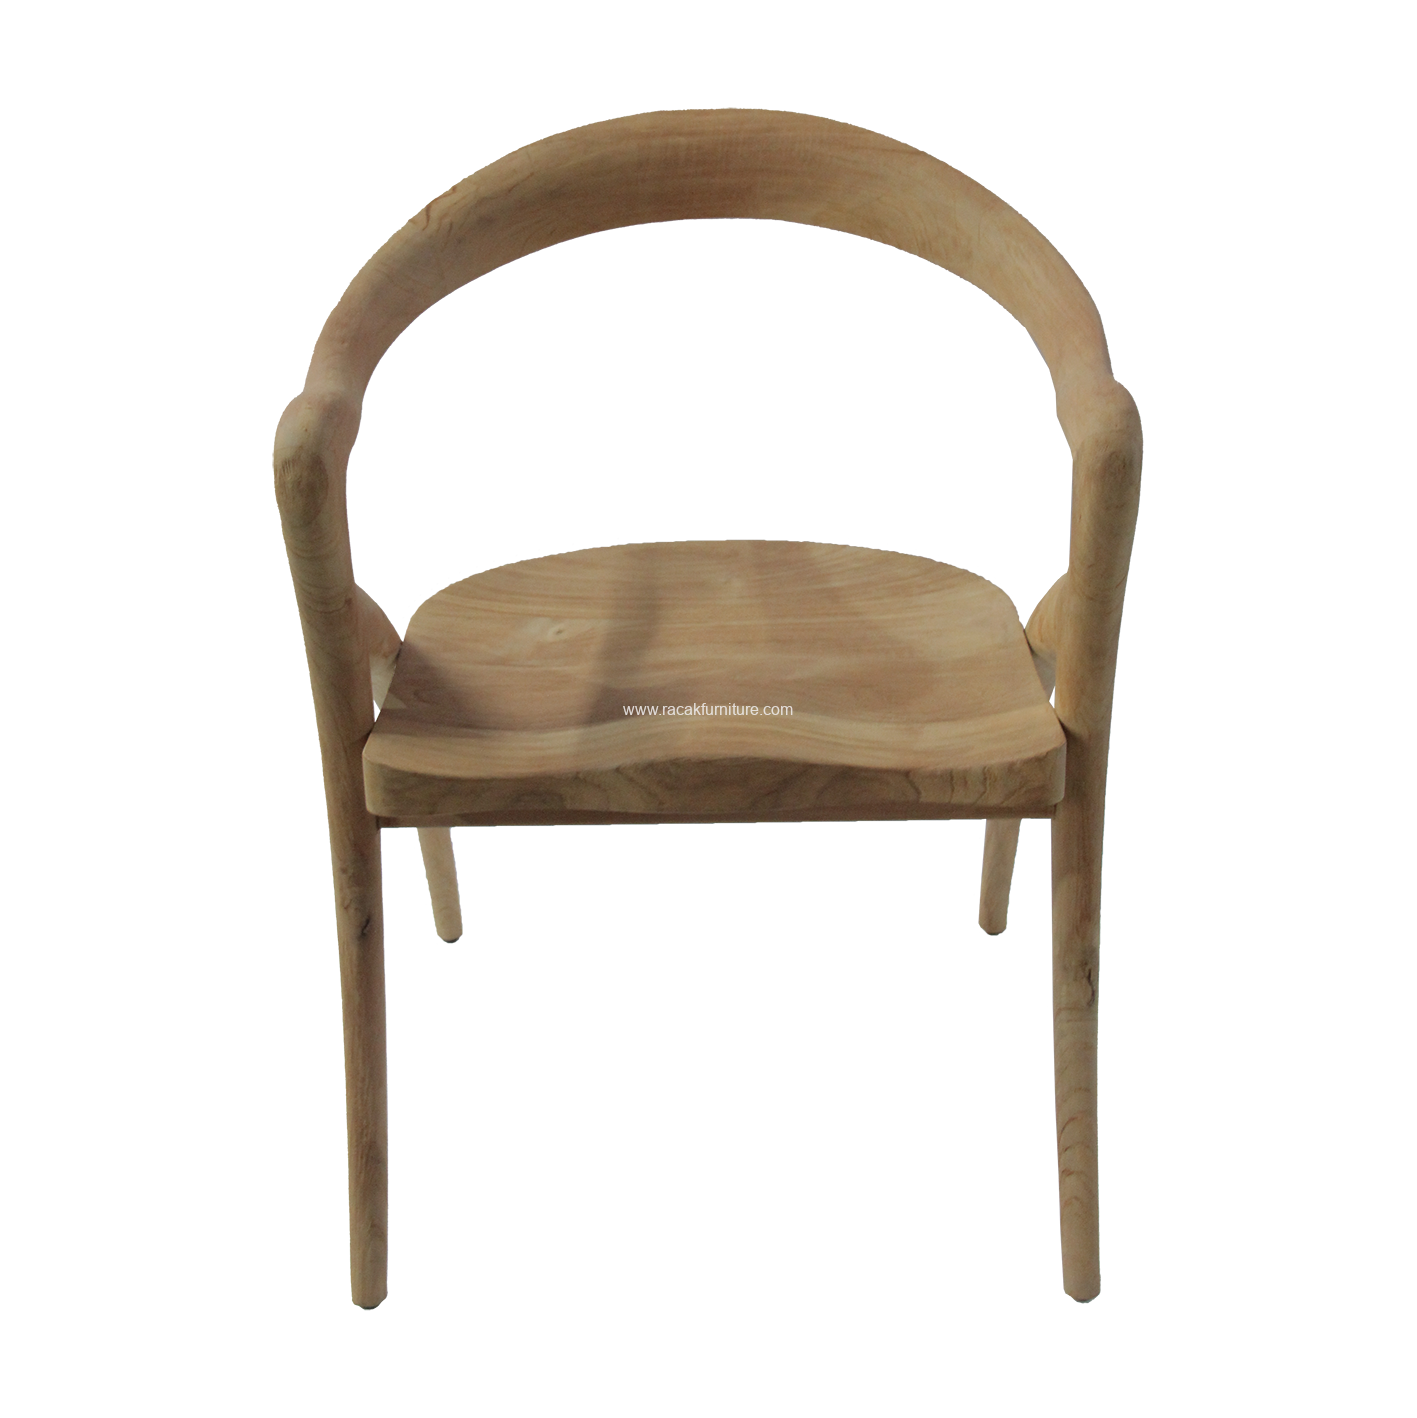 Chair Balbo web 1